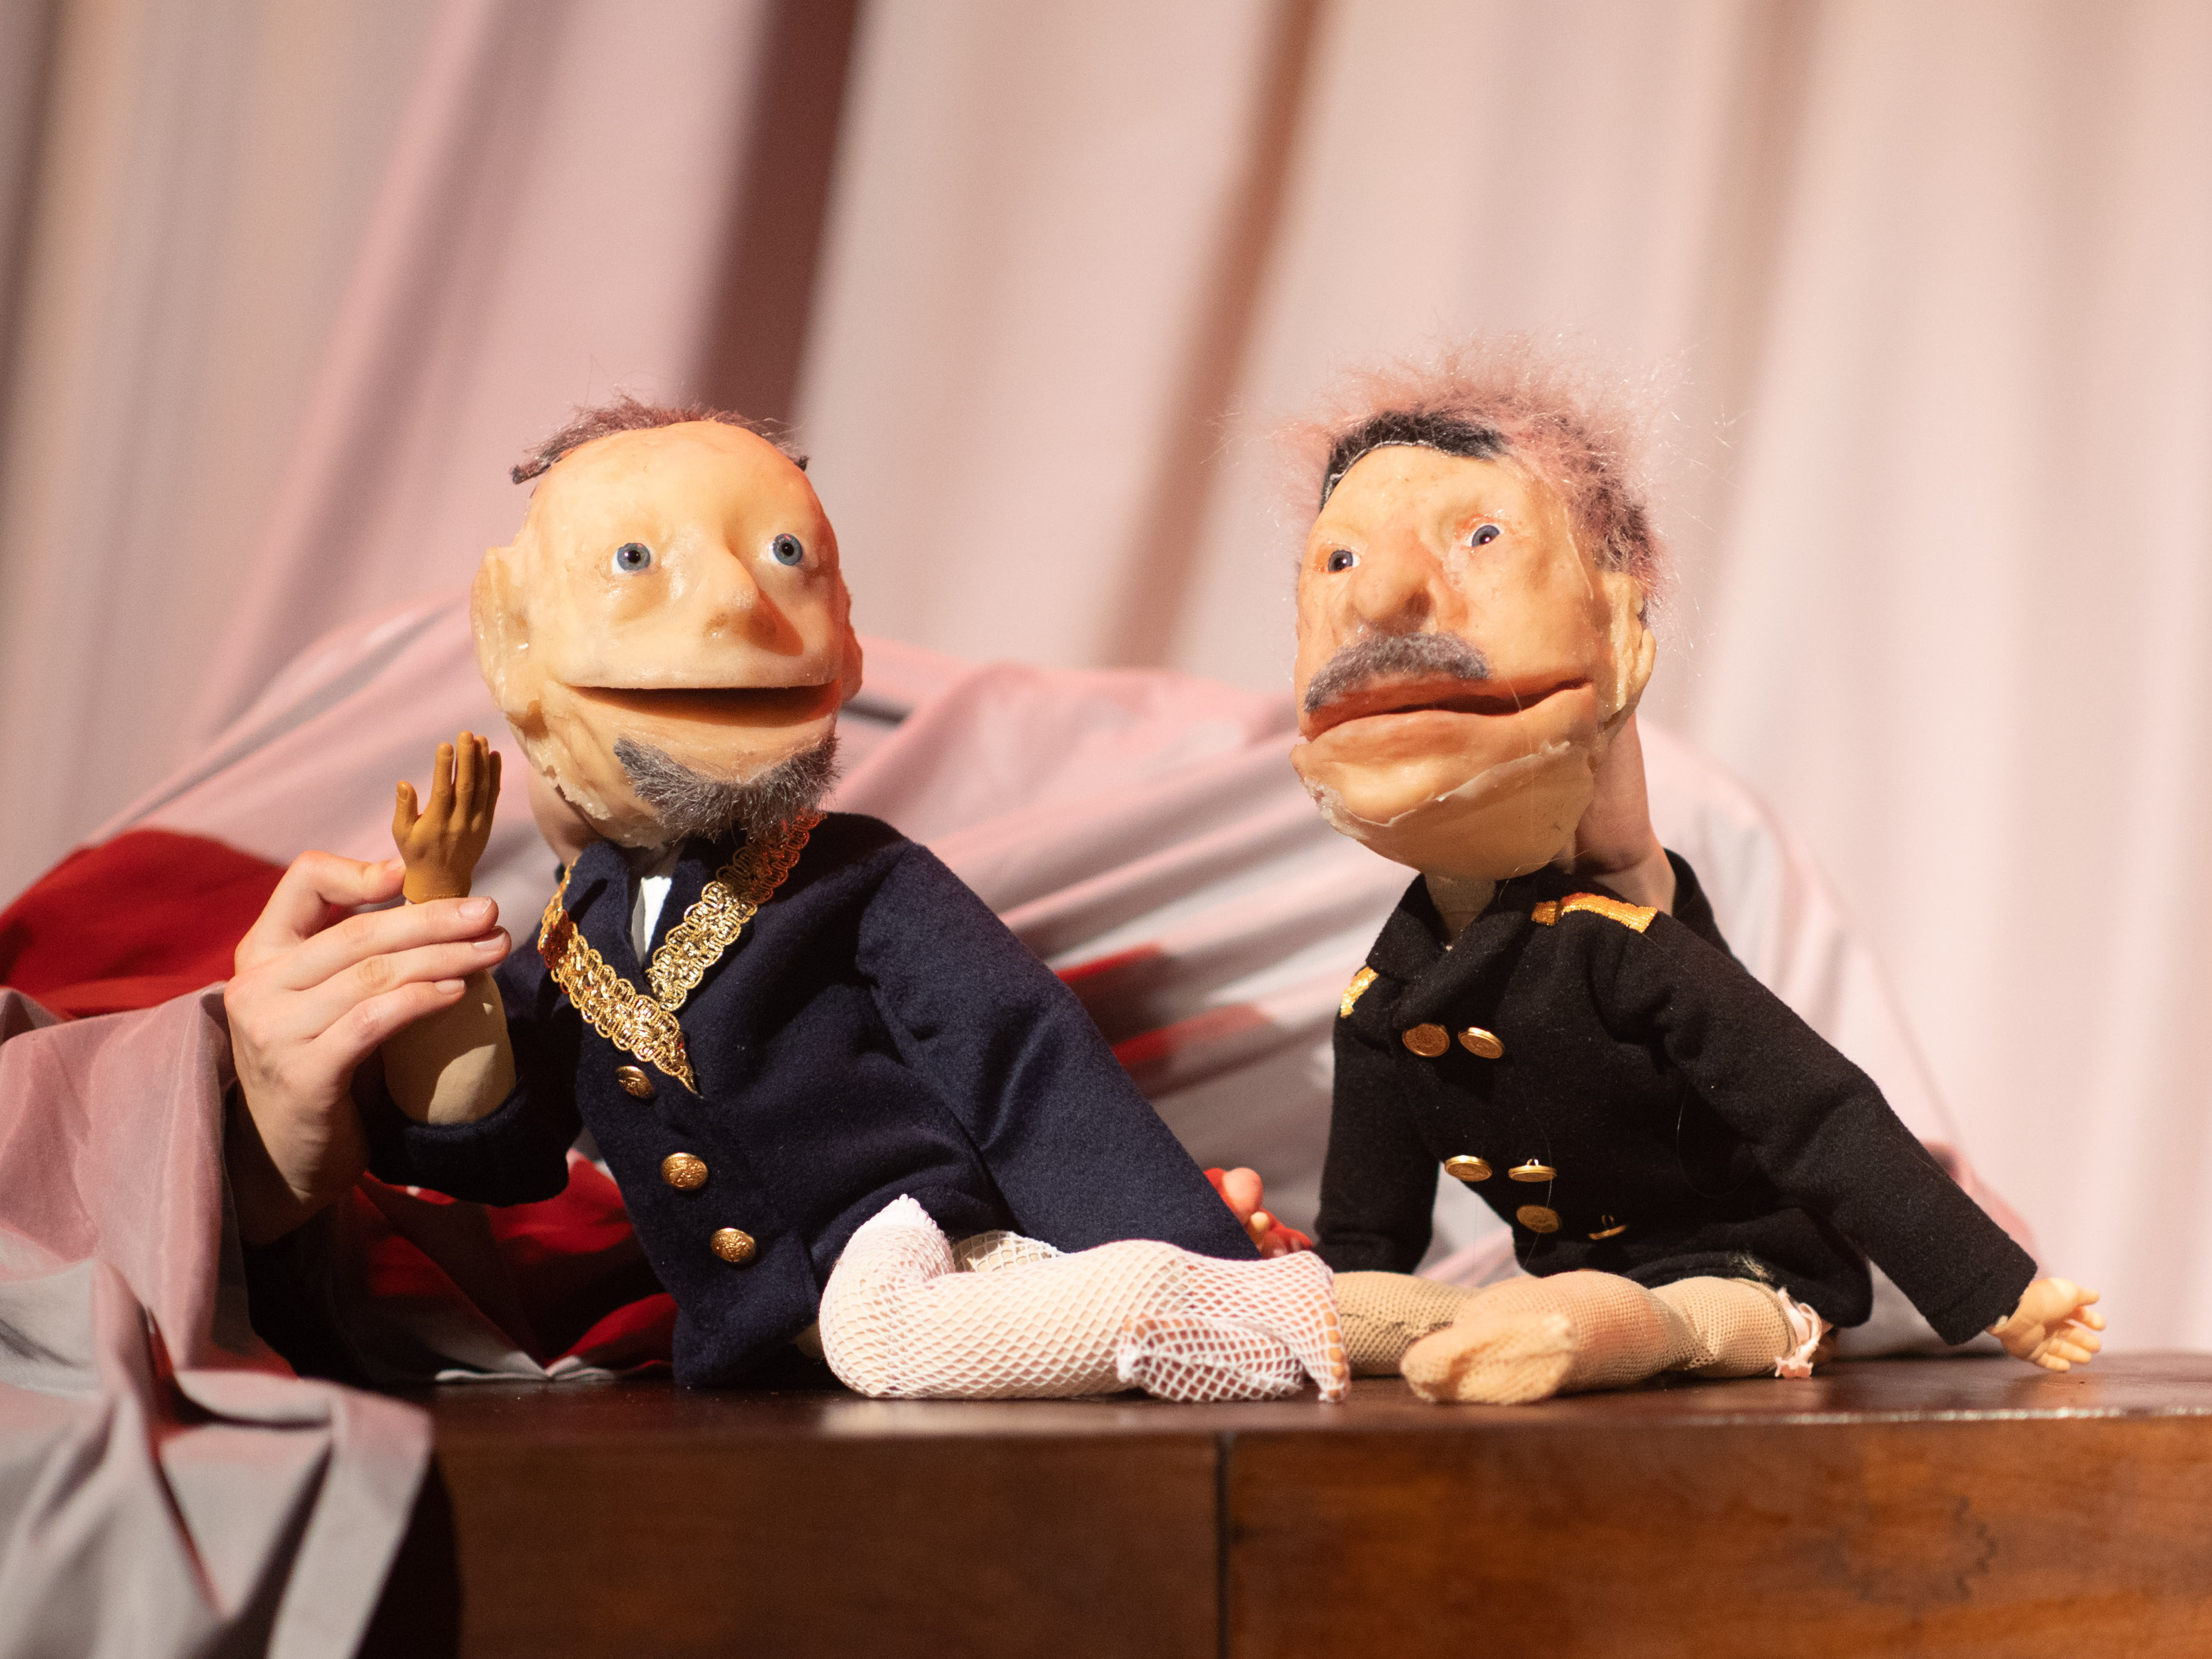 Die etwa Menschenhand großen Puppen von zwei uniformierten, alten Männern sitzen auf einem Stück Holzmöbel. Die beiden tragen Schnurrbärte und haben graue Haare. Einer der Beiden hat einen Verband am Bein.